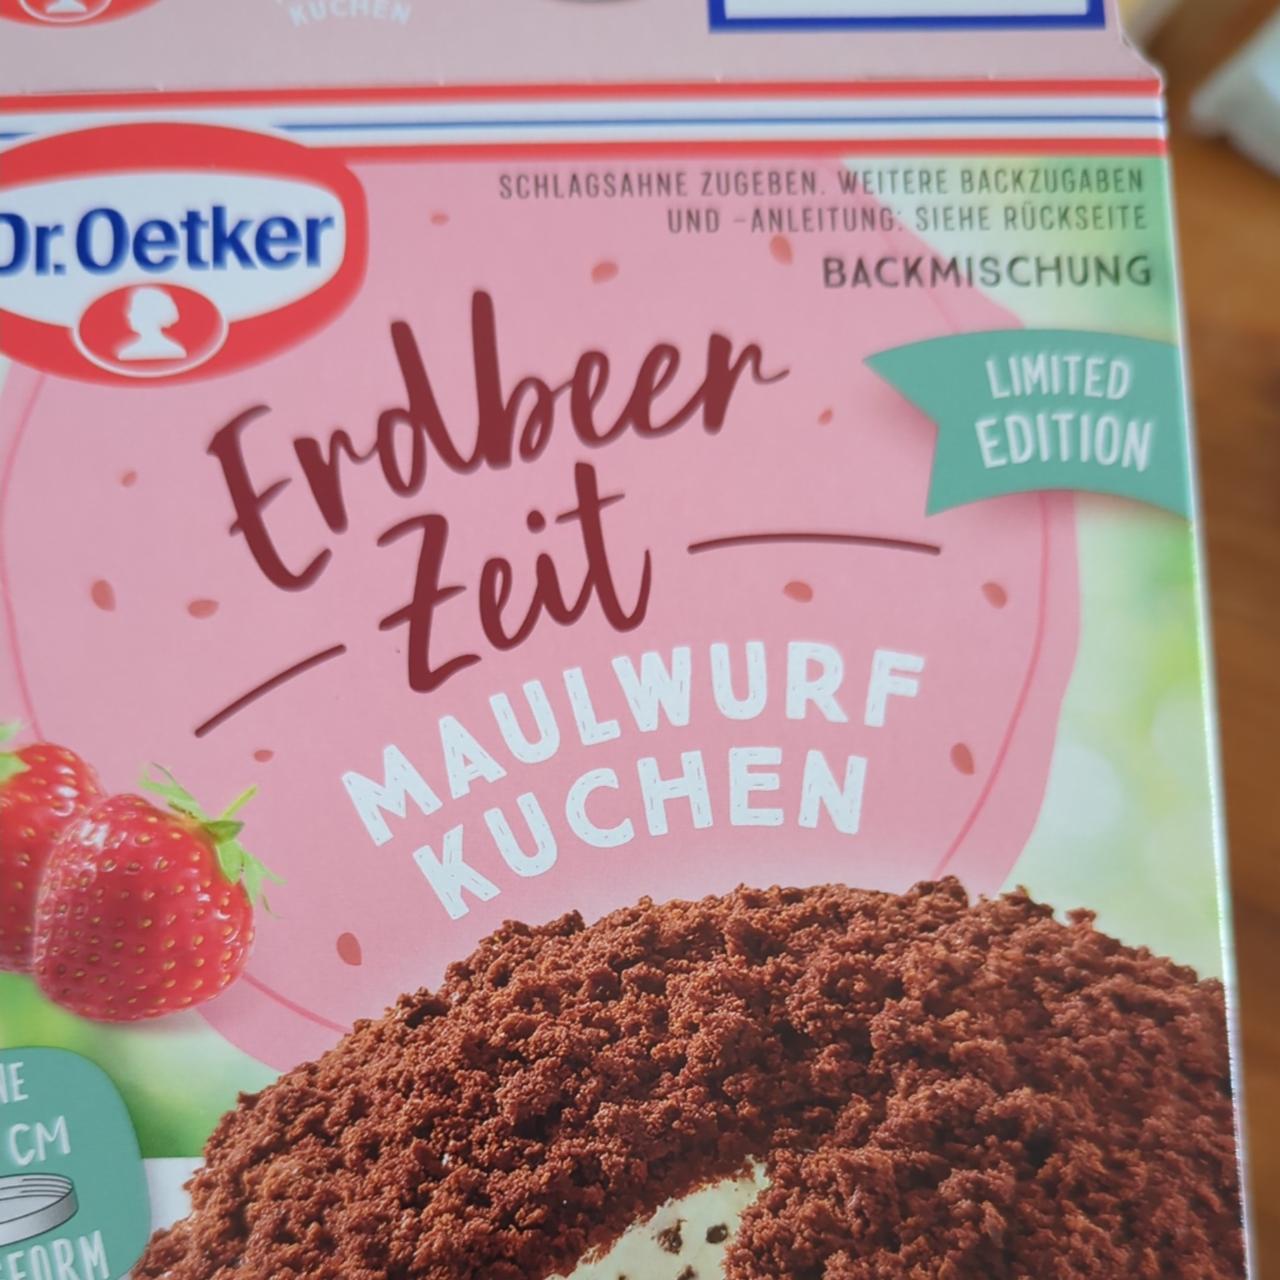 Fotografie - Erdbeer zeit maulwurf kuchen Dr.Oetker